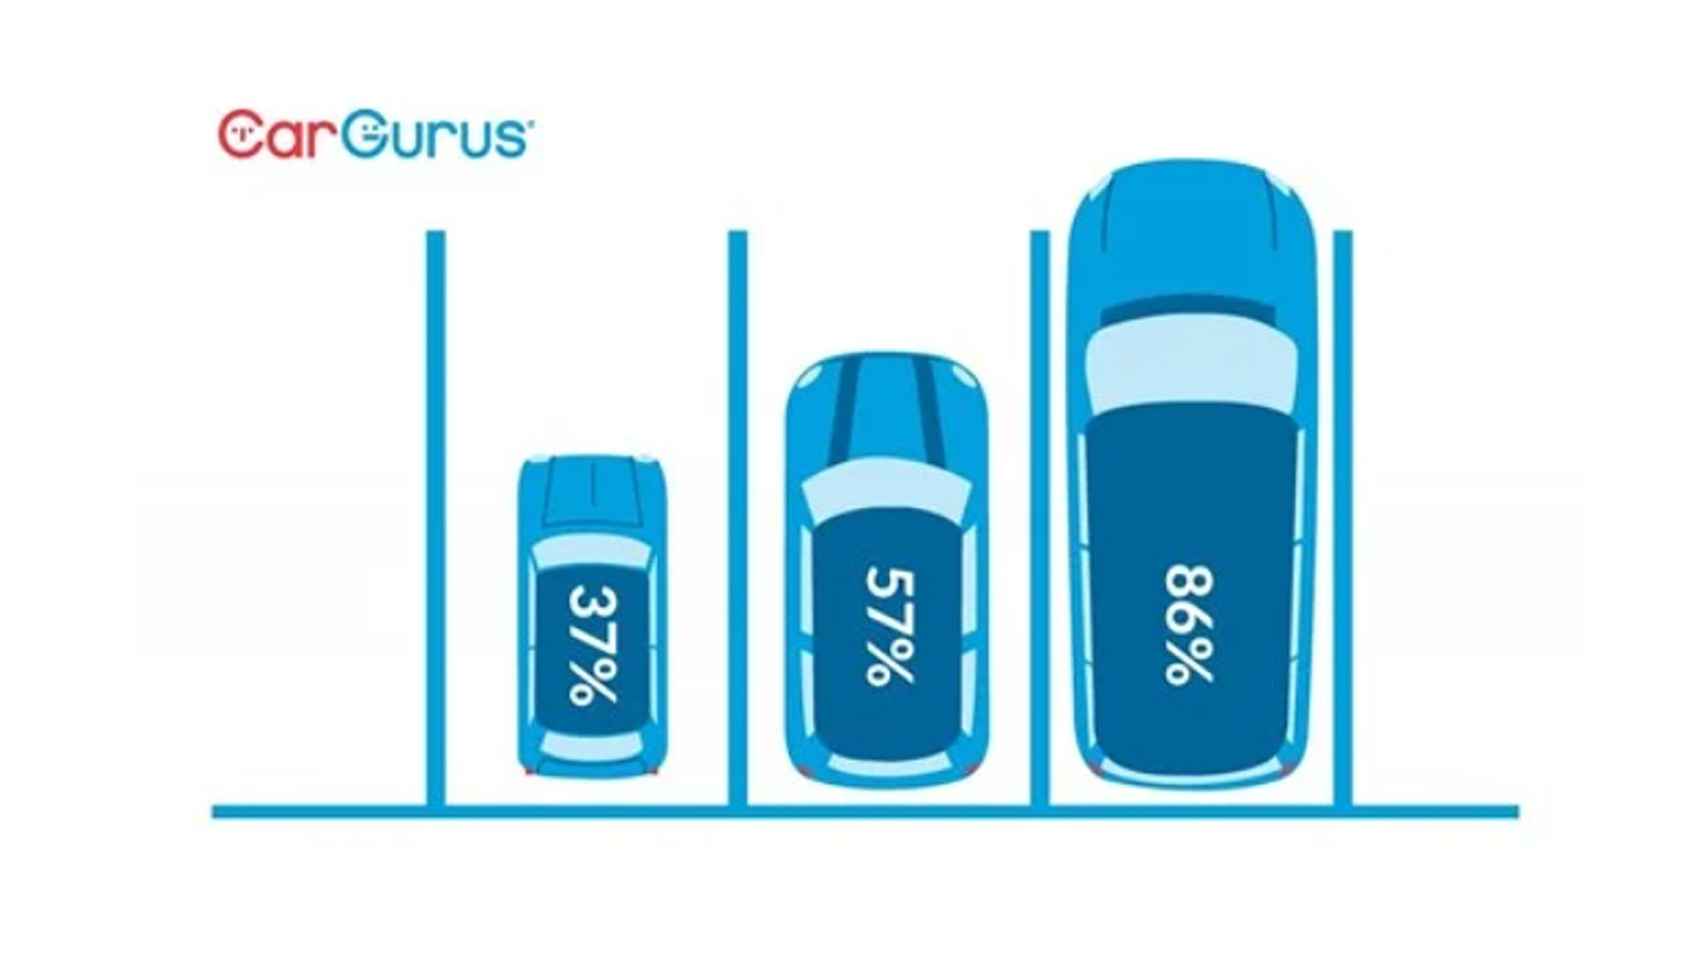 Así ha evolucionado el tamaño de los coches según el sitio web CarGurus.